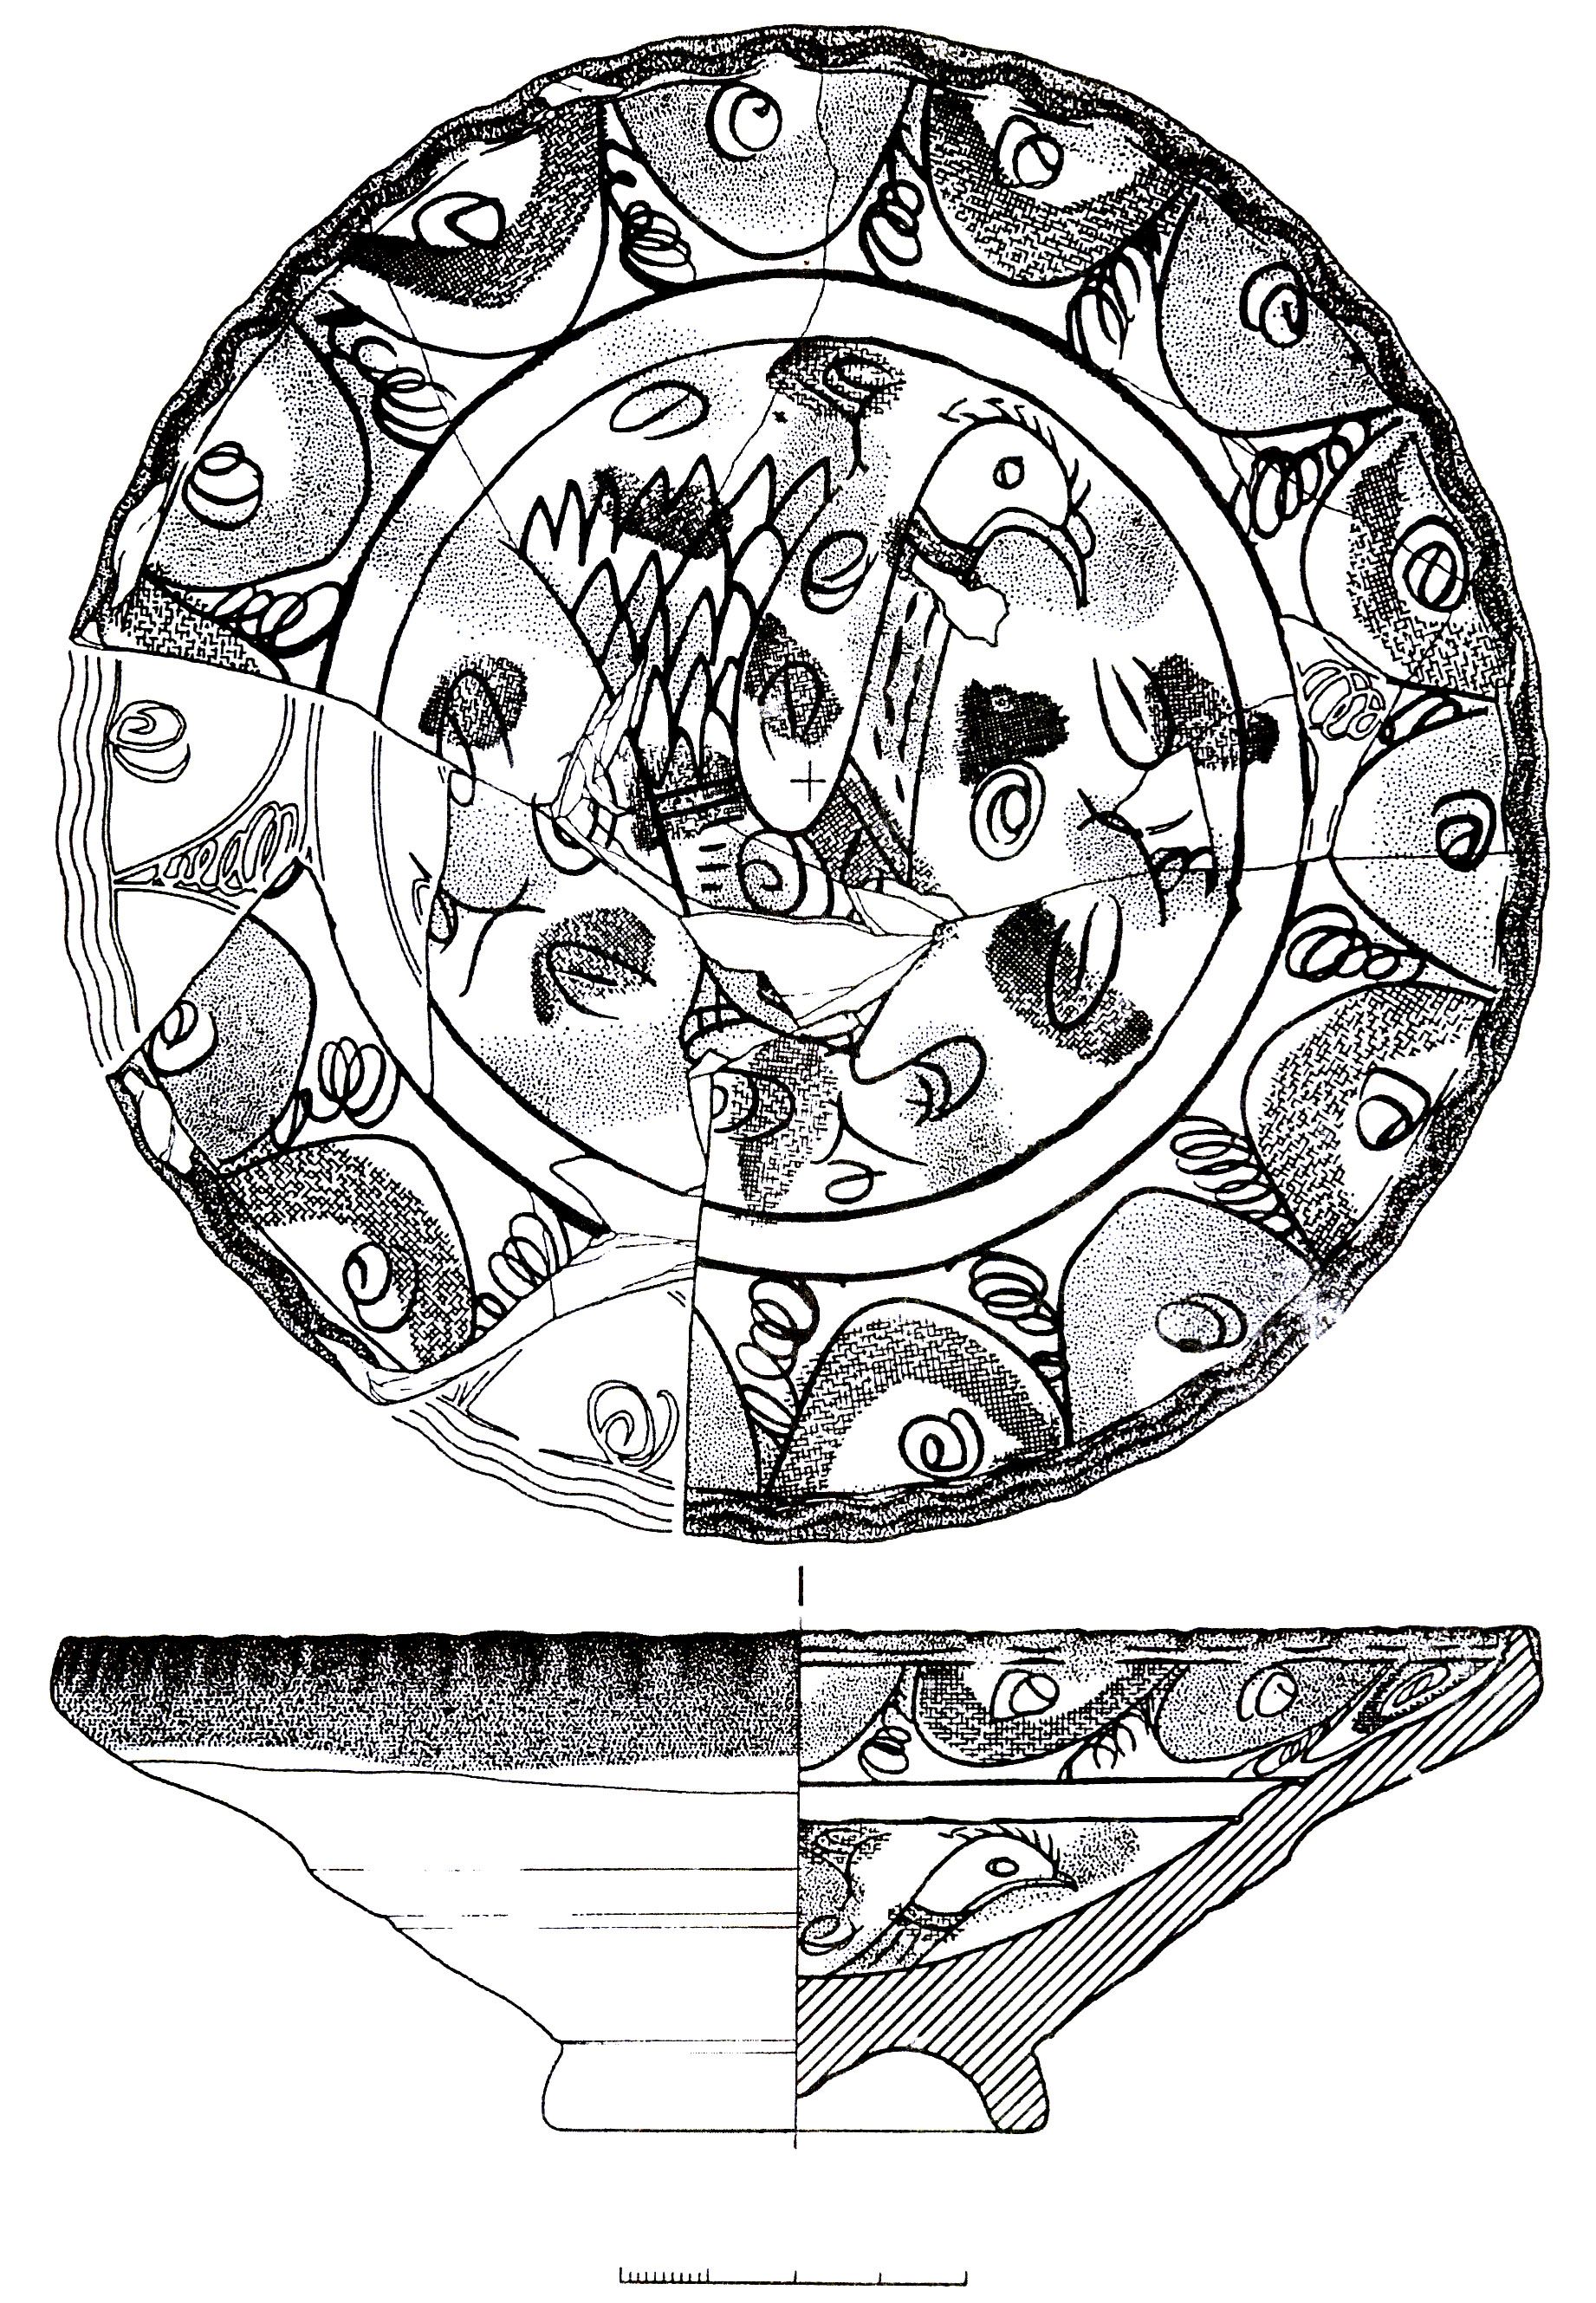 Рис. 18. Поливная тарелка с изображением птицы из раскопок Каффы (по В.П. Кирилко, 1998, рис. 1).